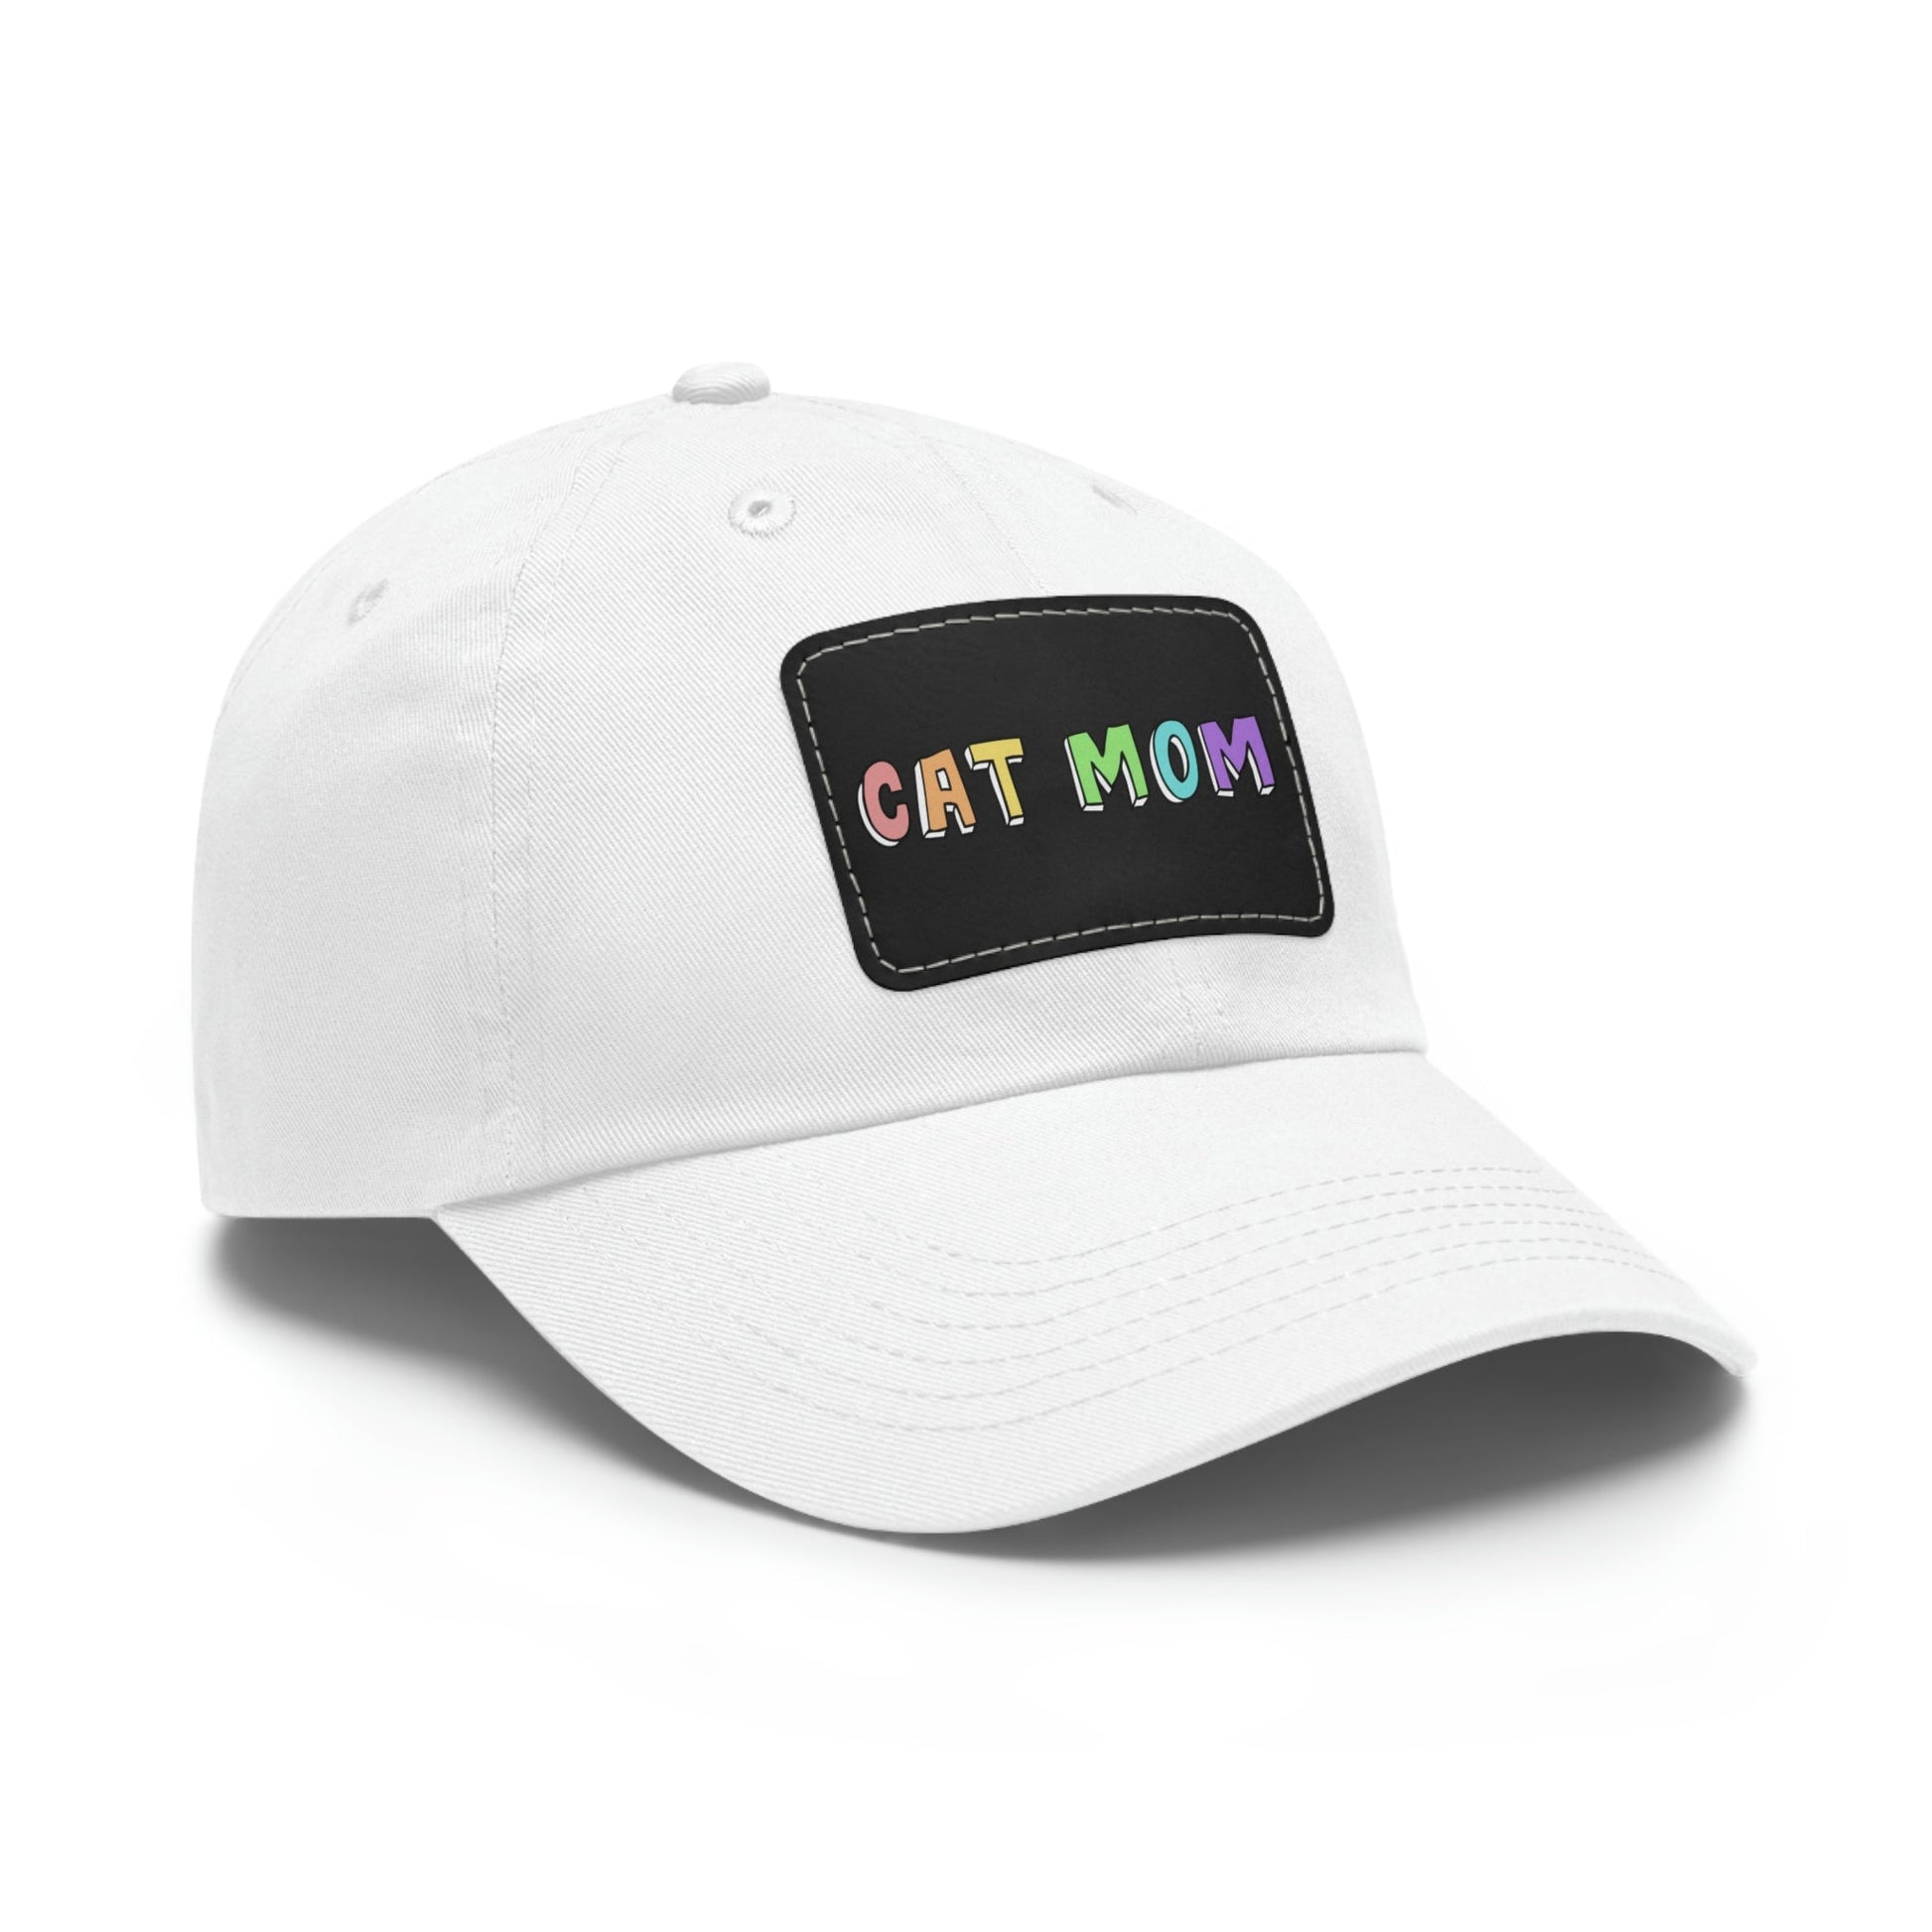 Cat Mom | Dad Hat - Detezi Designs-72125145651830253753